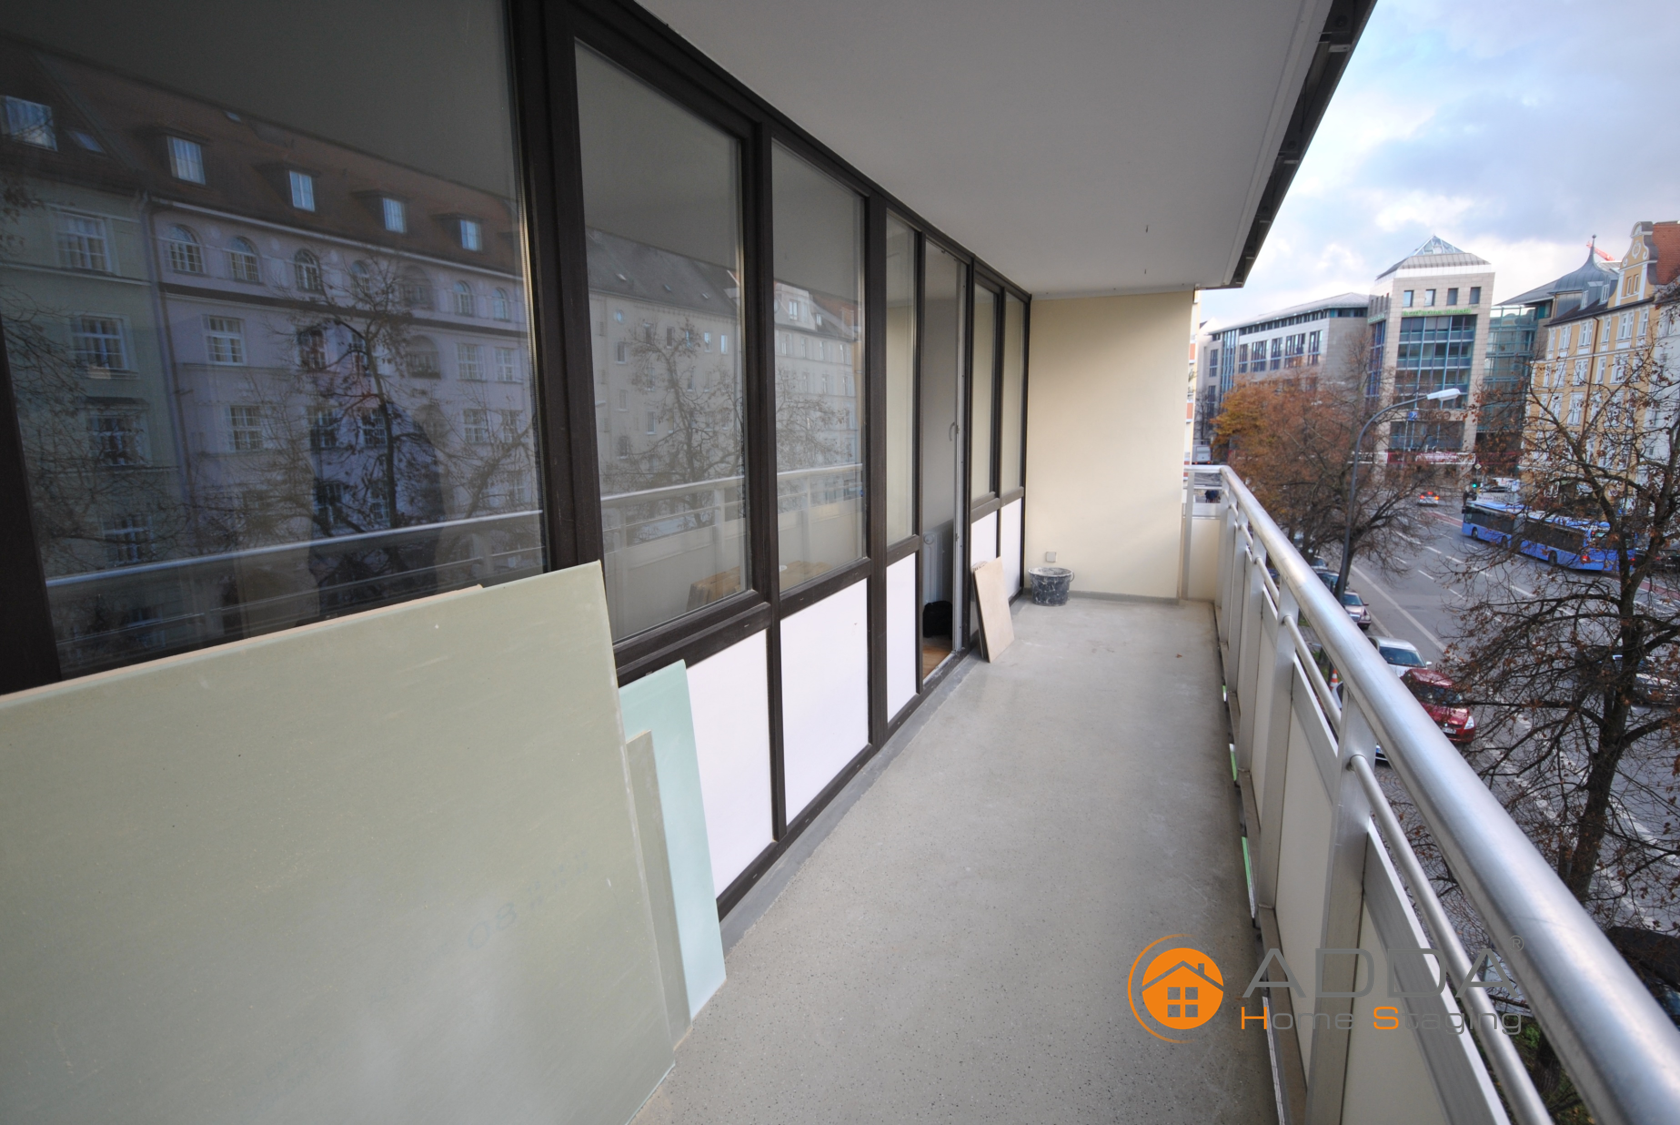 Balkon vor ADDA Homestaging #raumgestaltung ©ADDA Homestaging